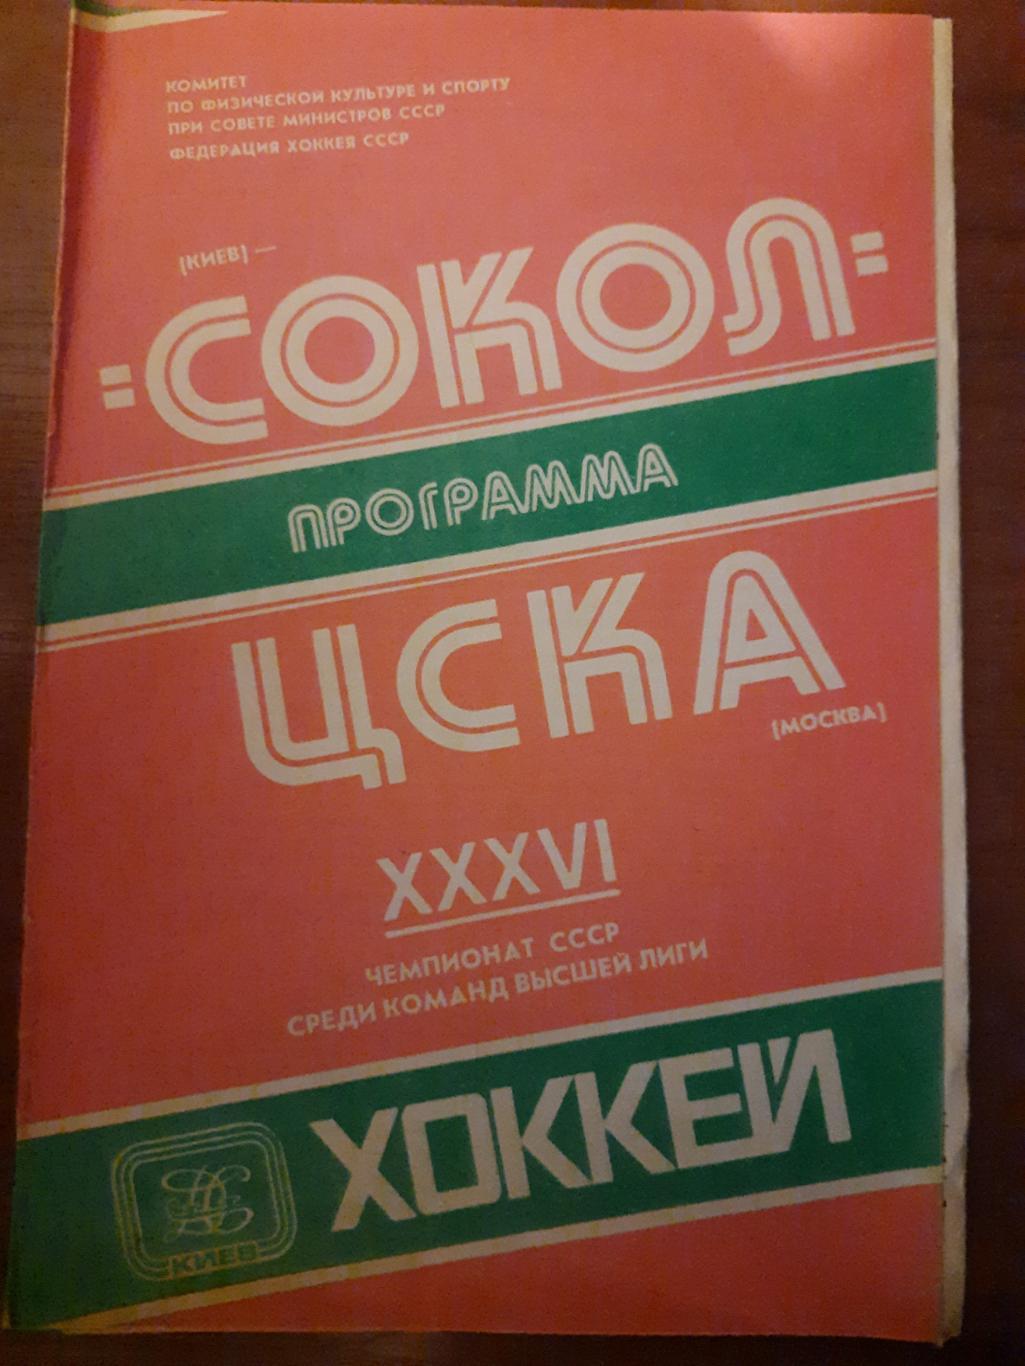 Сокол Киев - ЦСКА Москва 28.11.1981